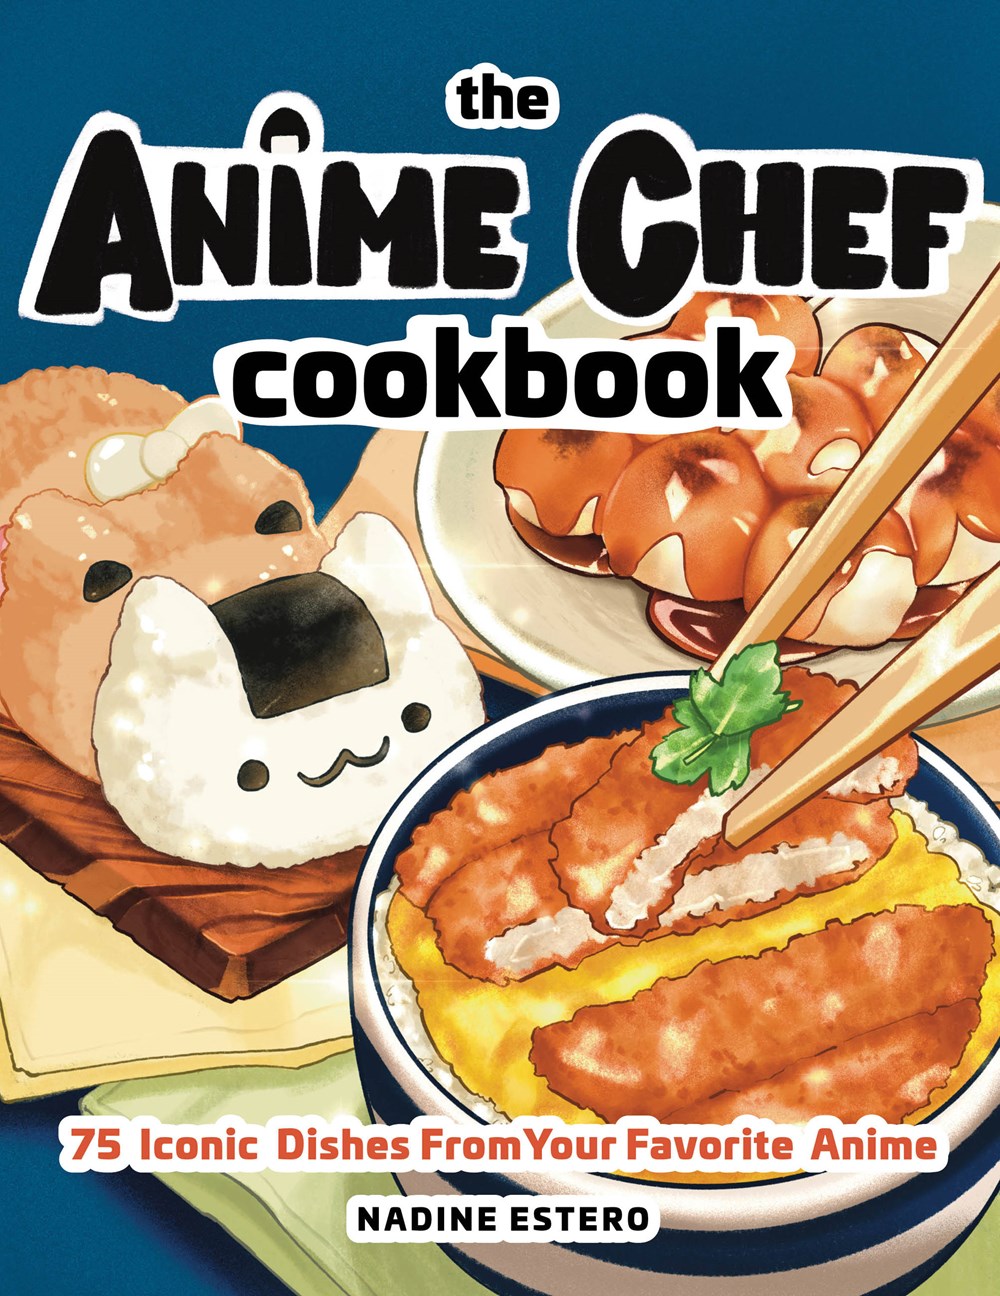 The Anime Chef Cookbook by Nadine Estero